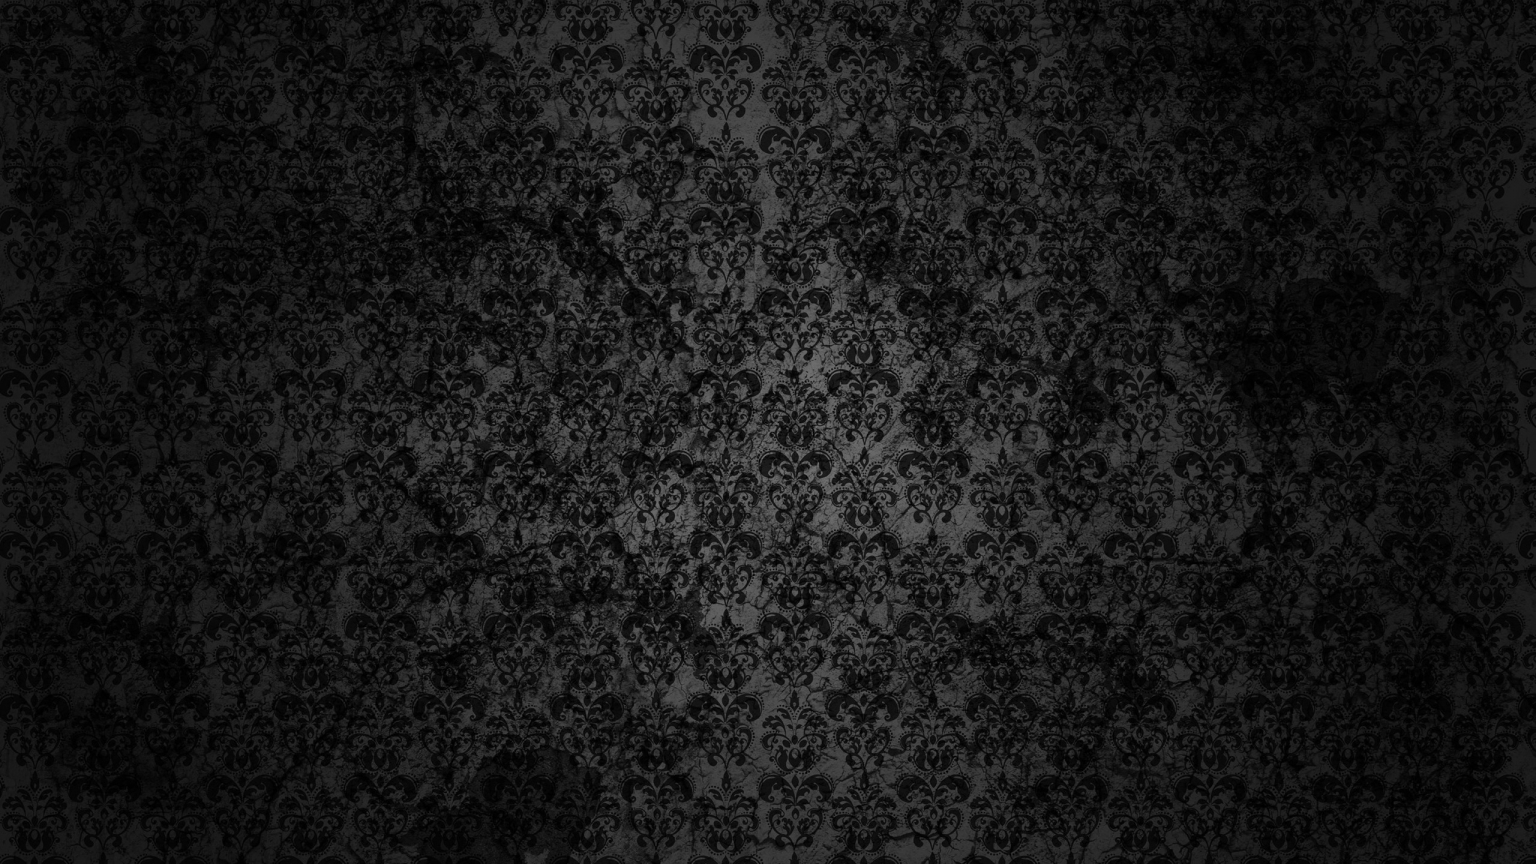 Black Floral Grunge for 1536 x 864 HDTV resolution